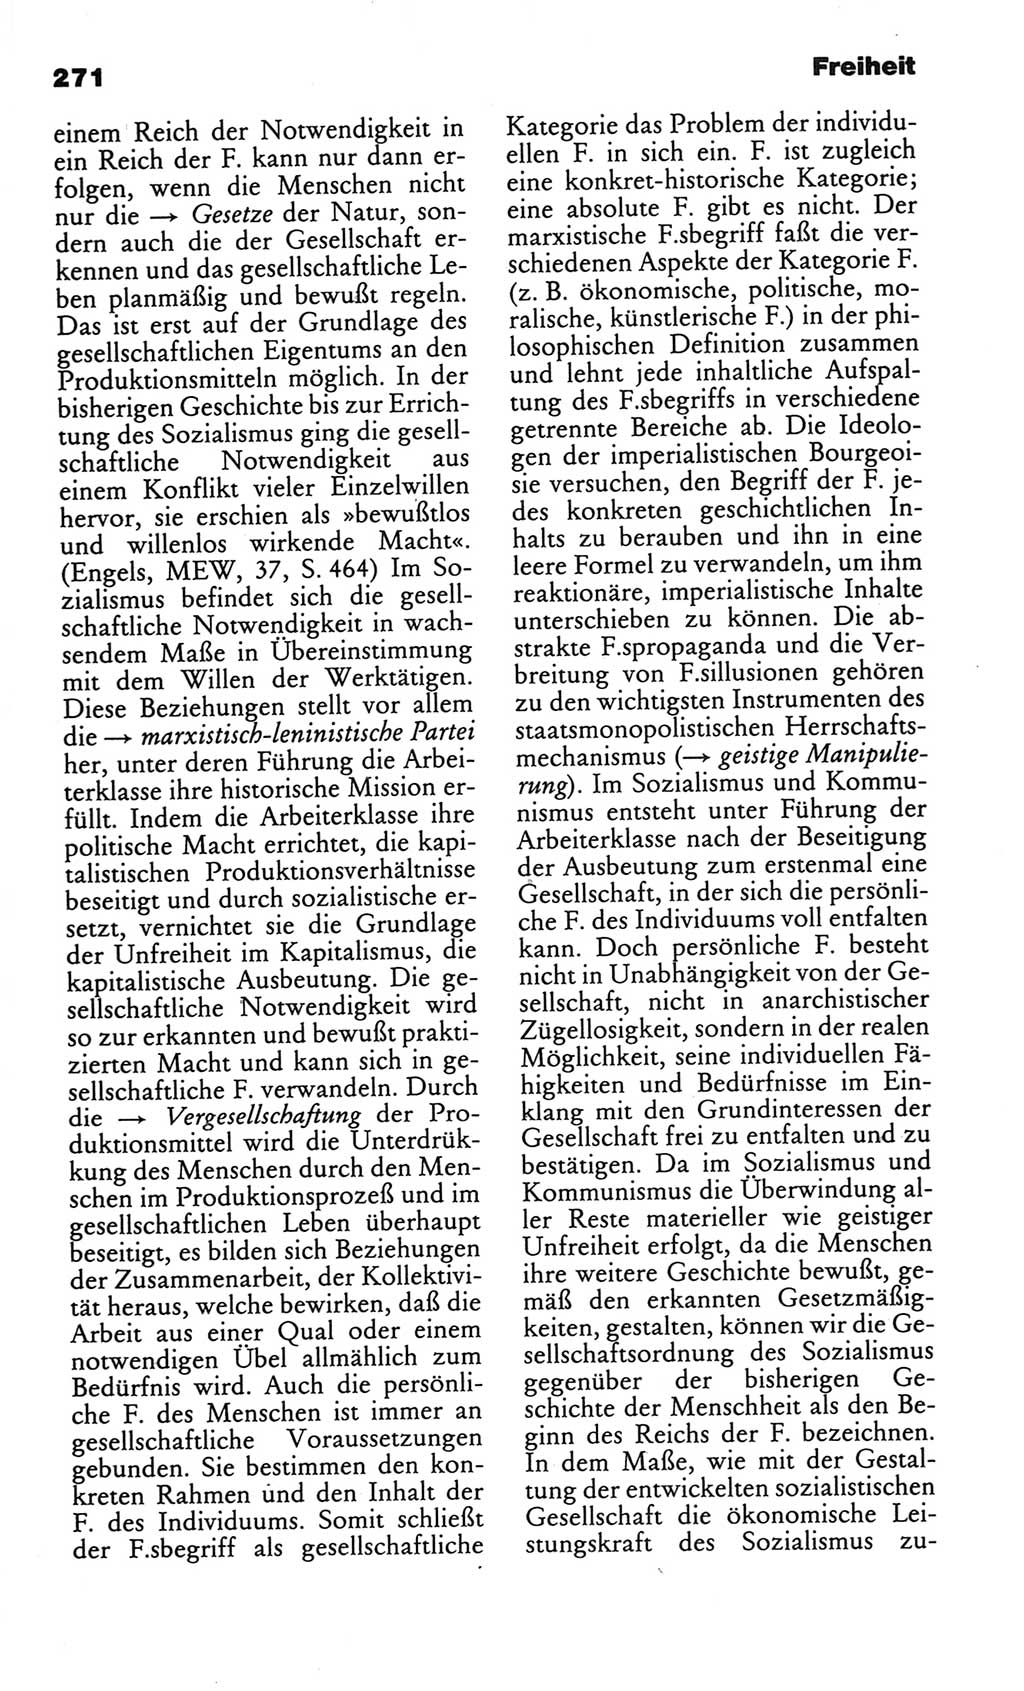 Kleines politisches Wörterbuch [Deutsche Demokratische Republik (DDR)] 1986, Seite 271 (Kl. pol. Wb. DDR 1986, S. 271)